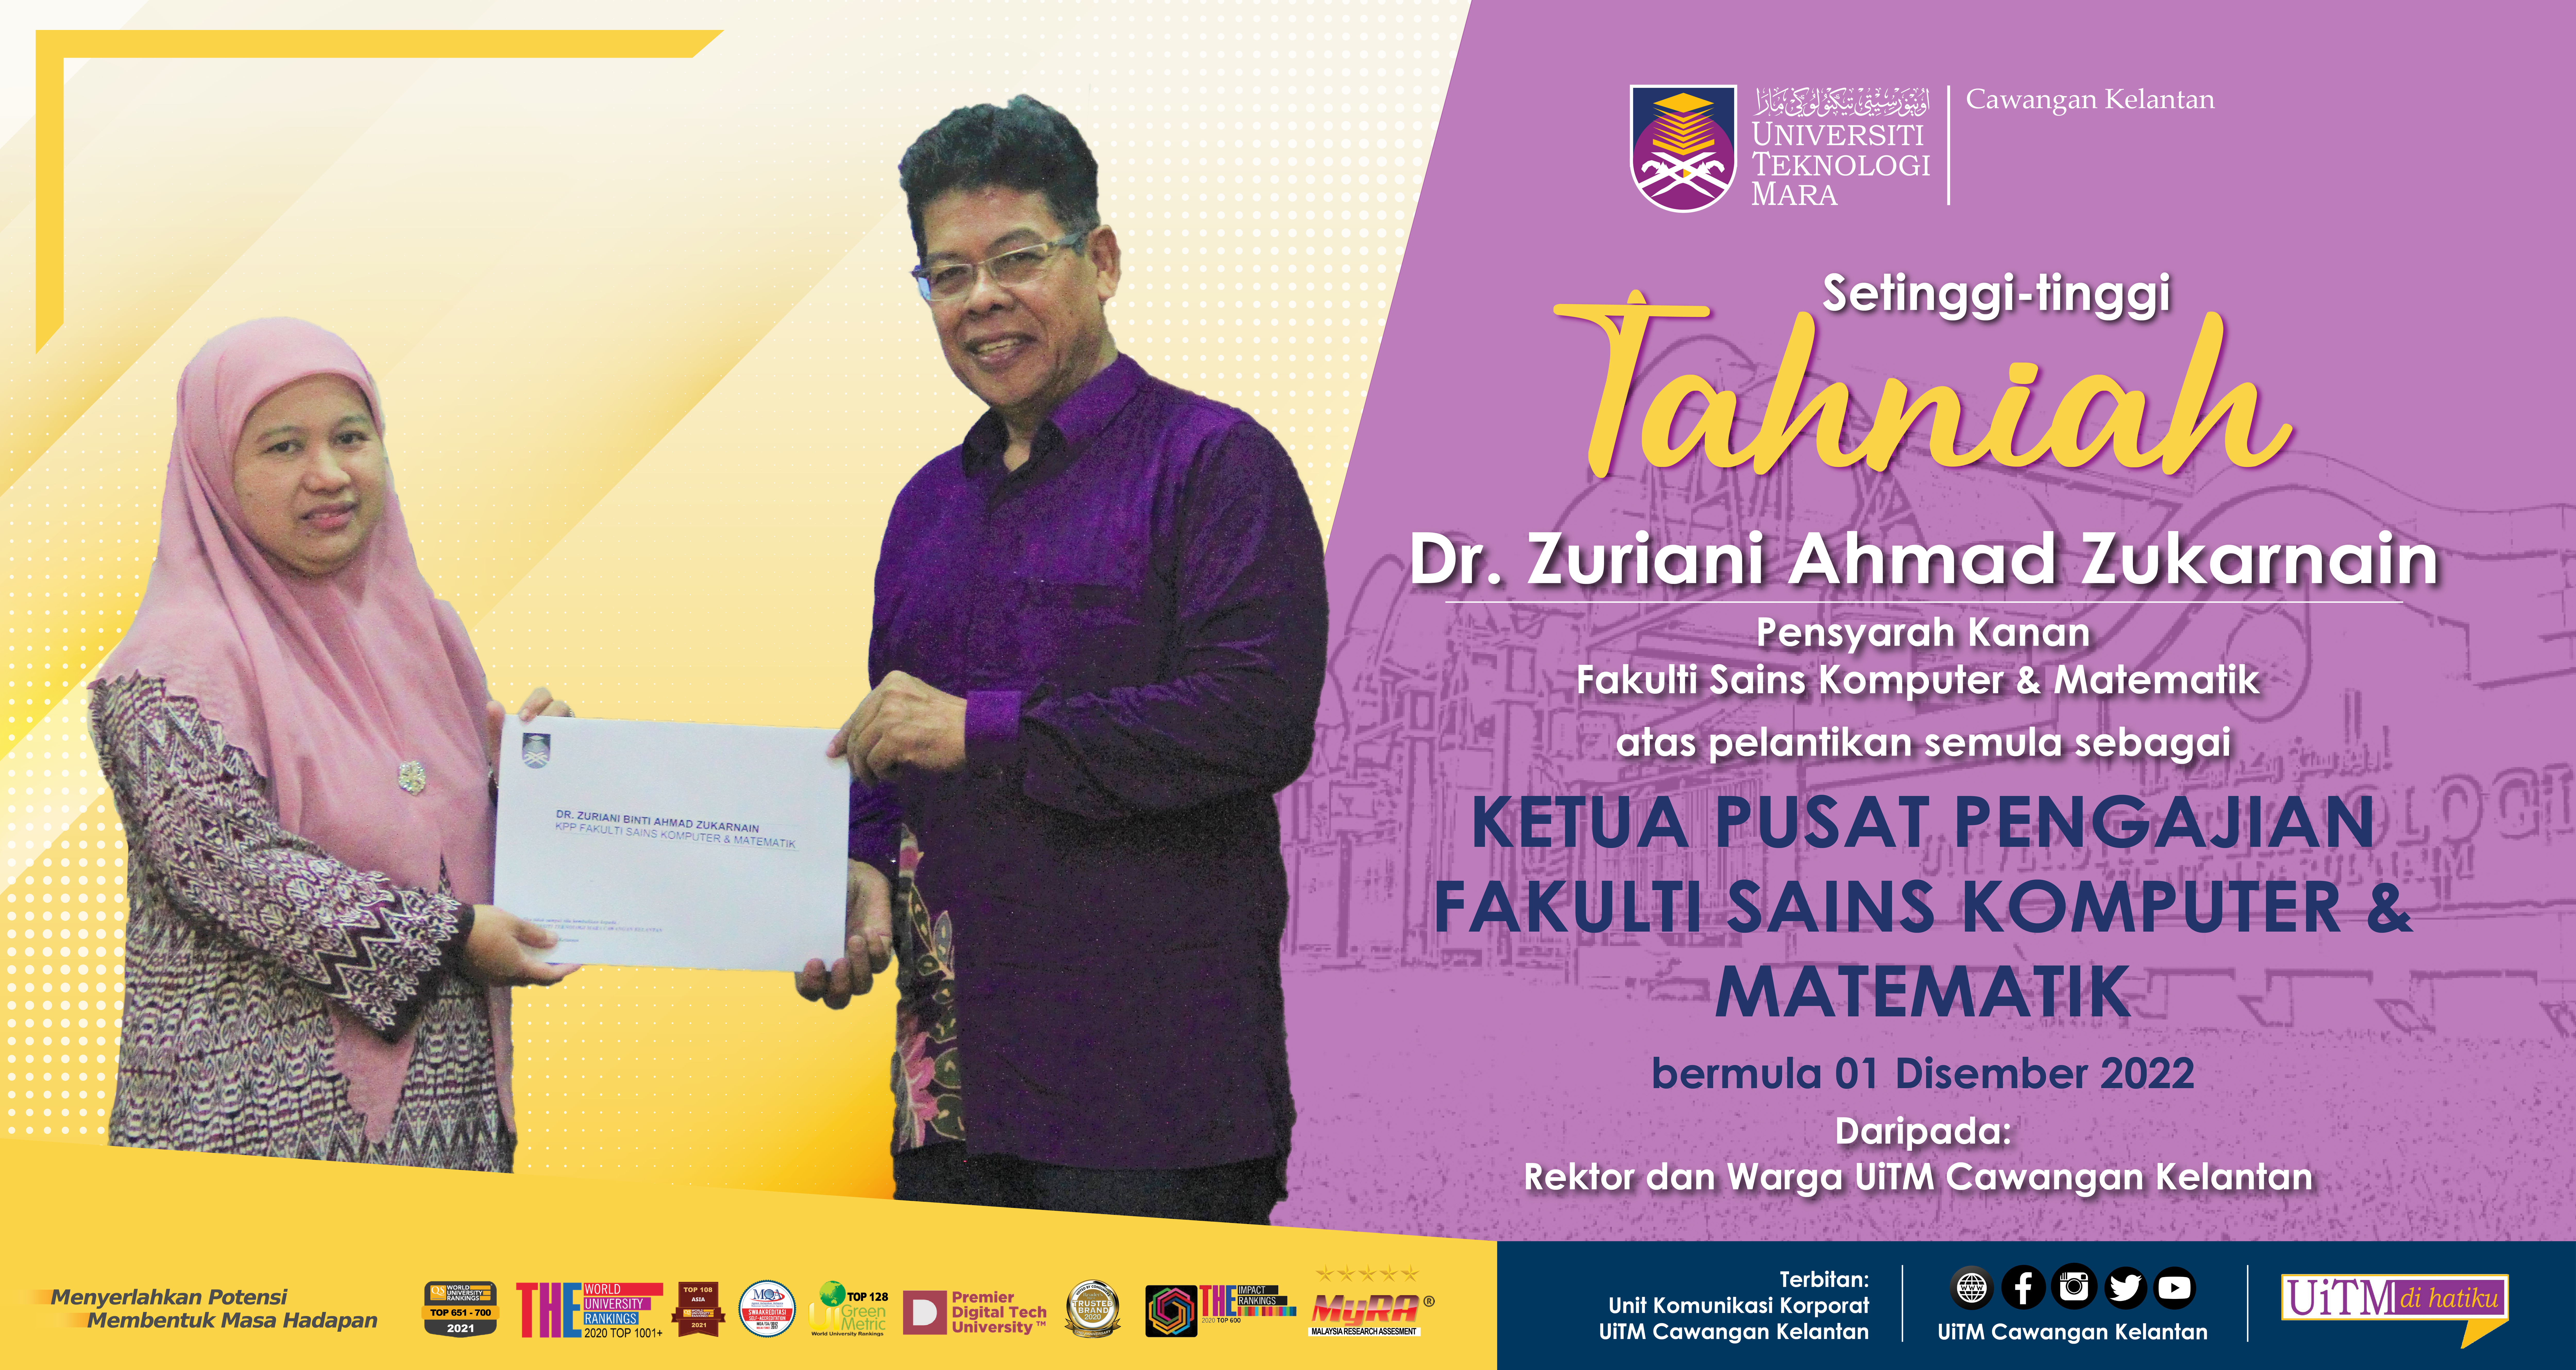 Tahniah!!! Dr. Zuriani Ahmad Zukarnain, Ketua Pusat Pengajian Fakulti Sains Komputer & Matematik